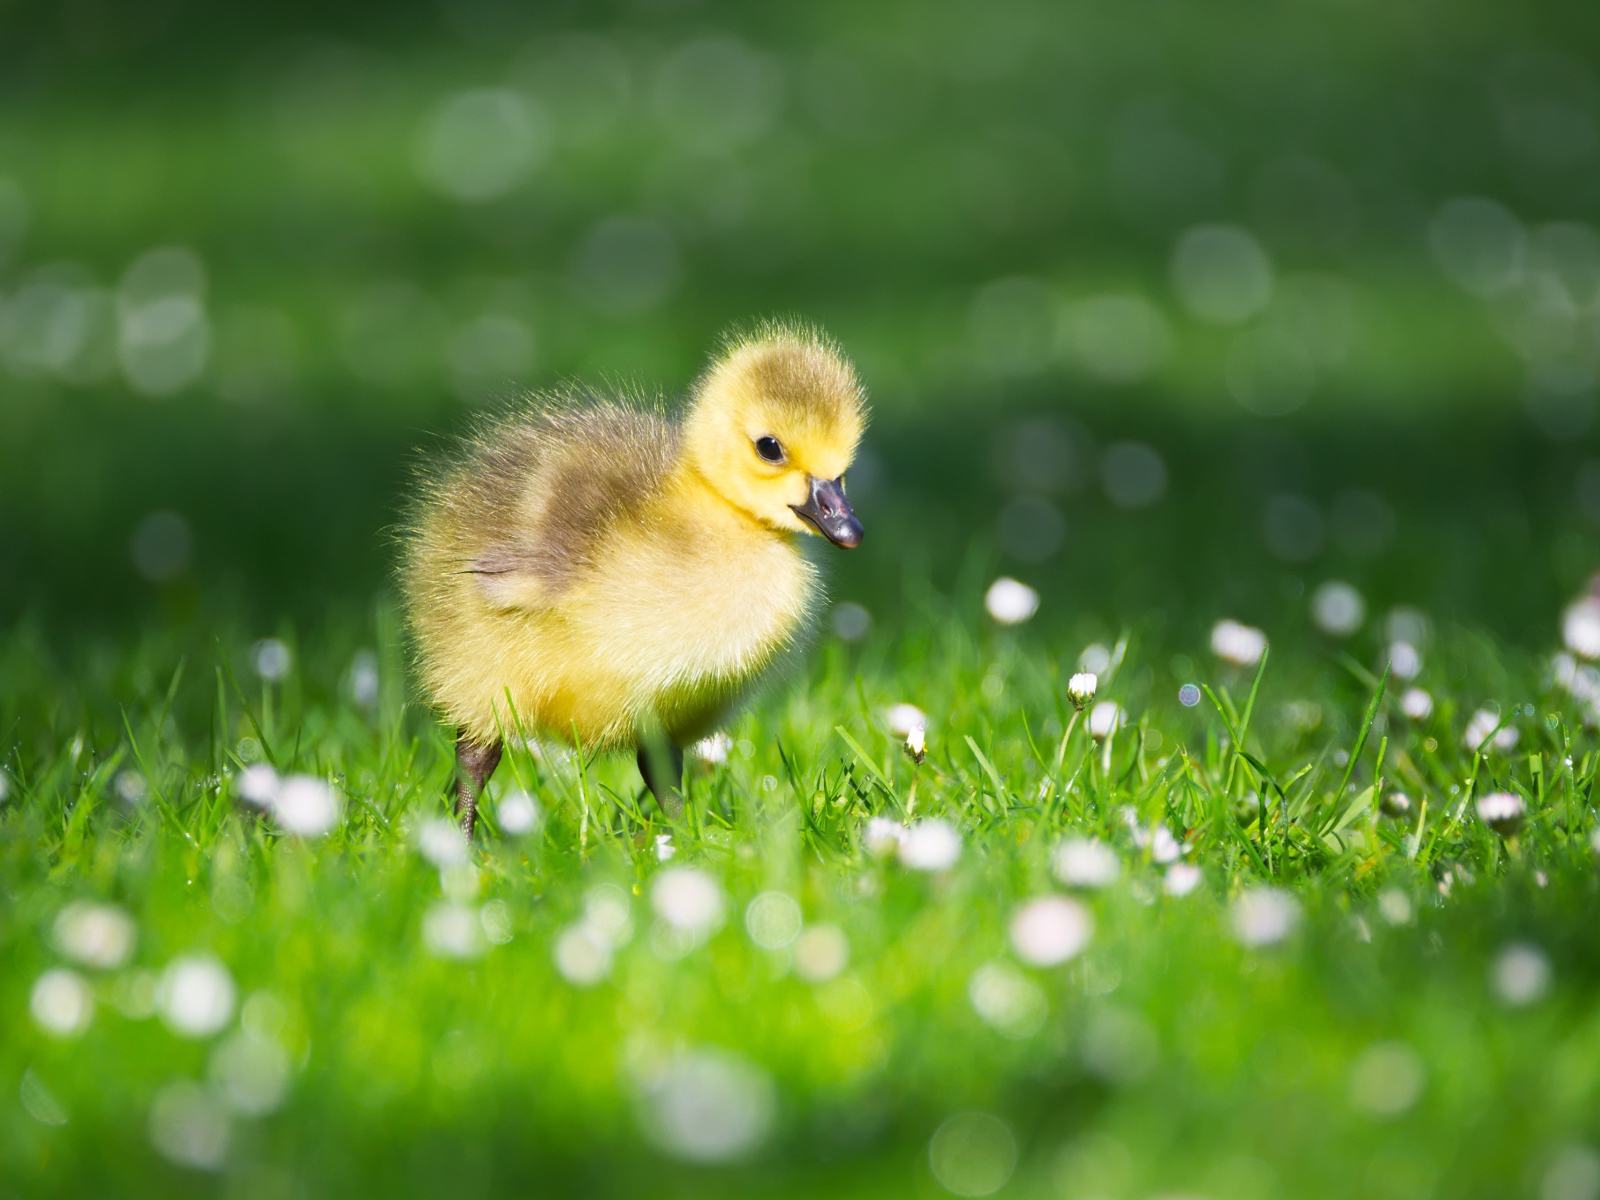 Little yellow duckling on green grass